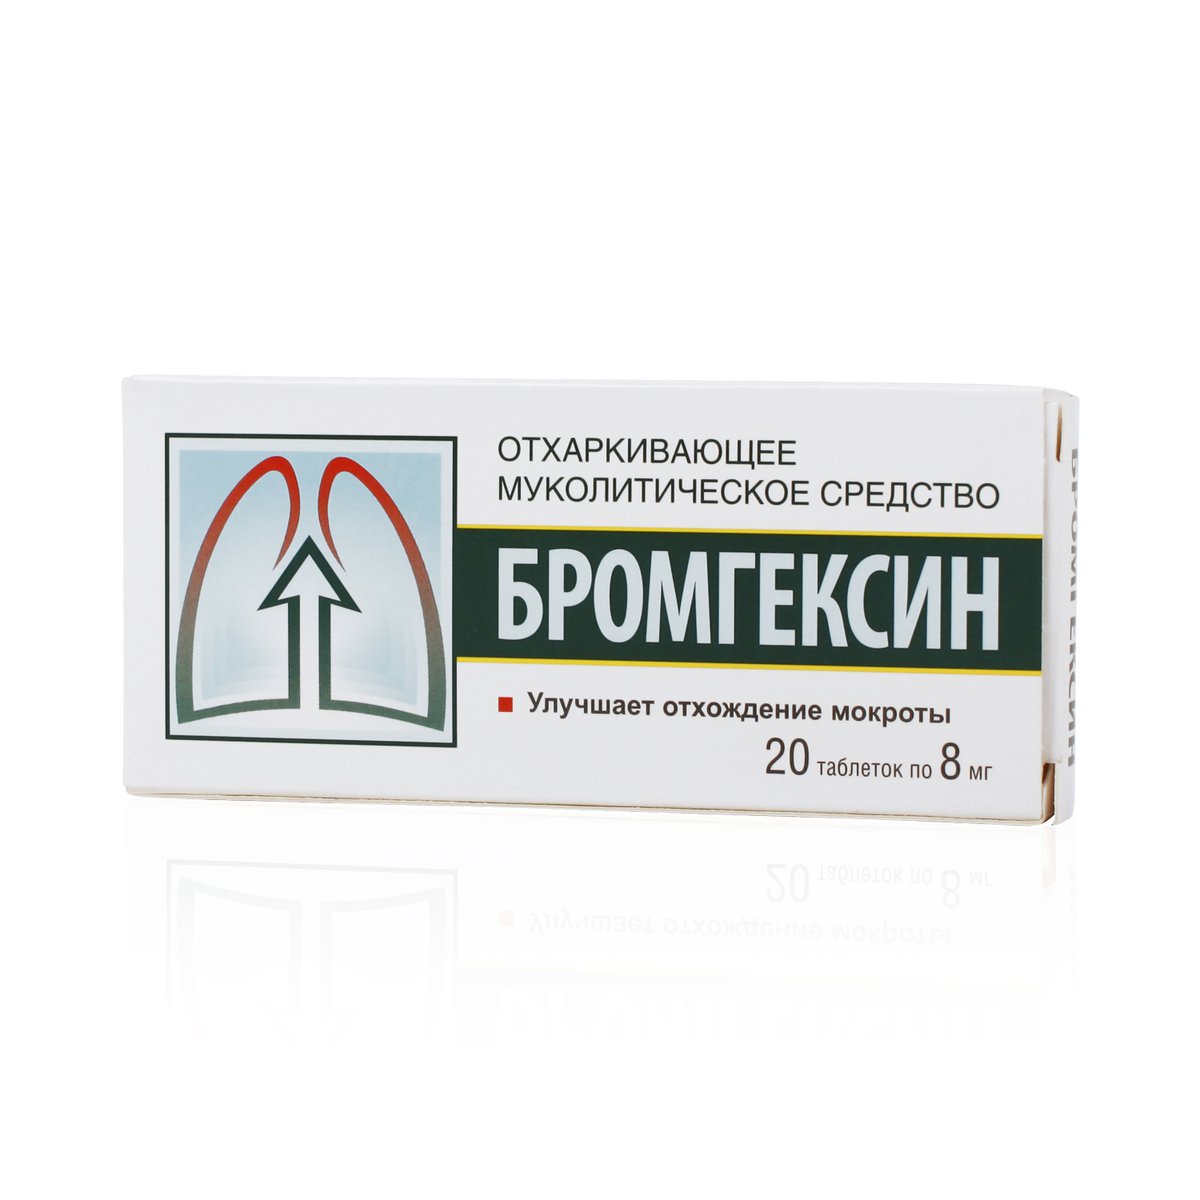 Бромгексин (таблетки, 20 шт, 8 мг, для приема внутрь) - цена,  .